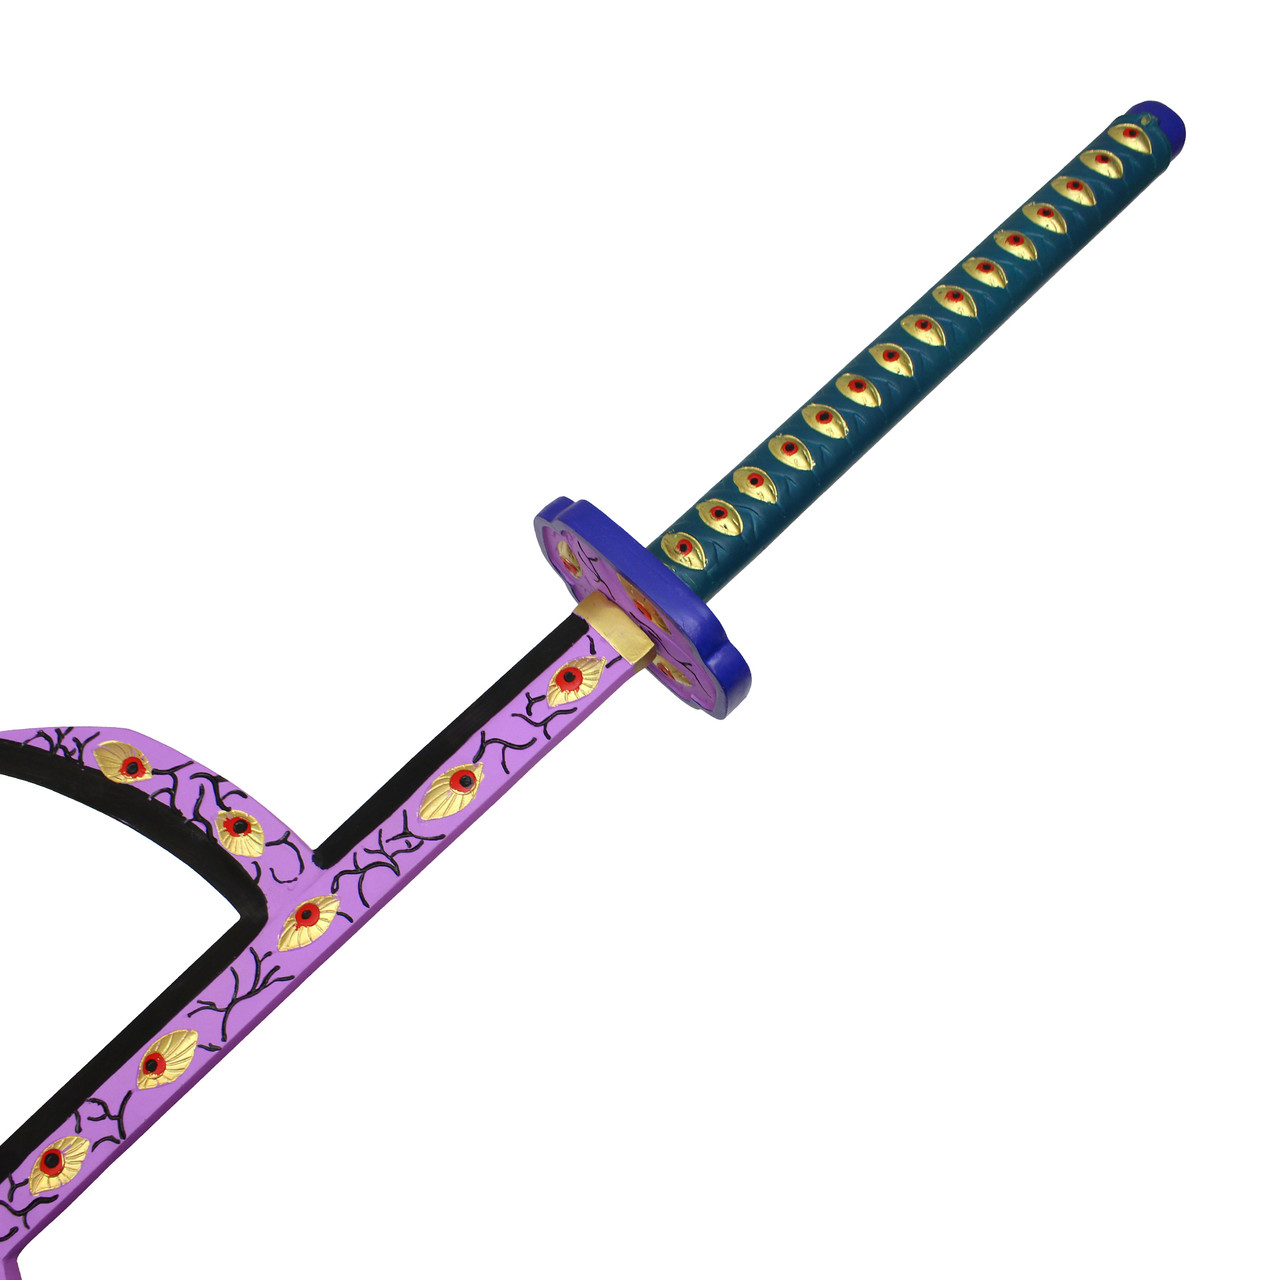 55” Fantasy Katana Sword